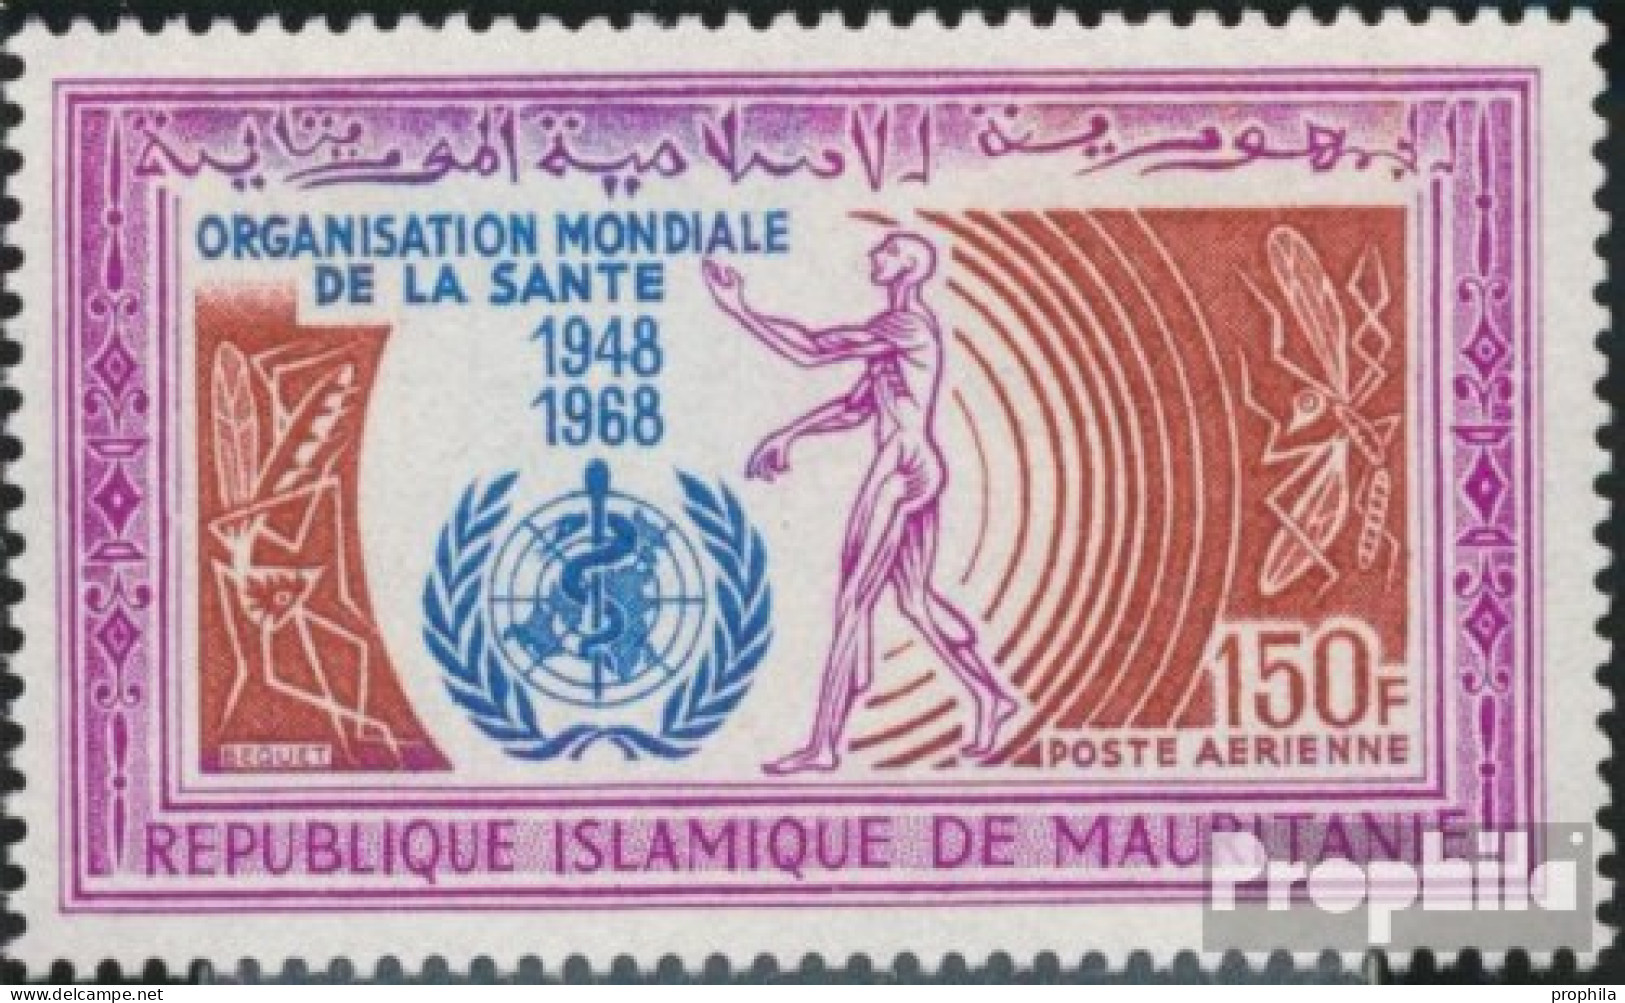 Mauretanien 341 (kompl.Ausg.) Postfrisch 1968 WHO - Mauritania (1960-...)